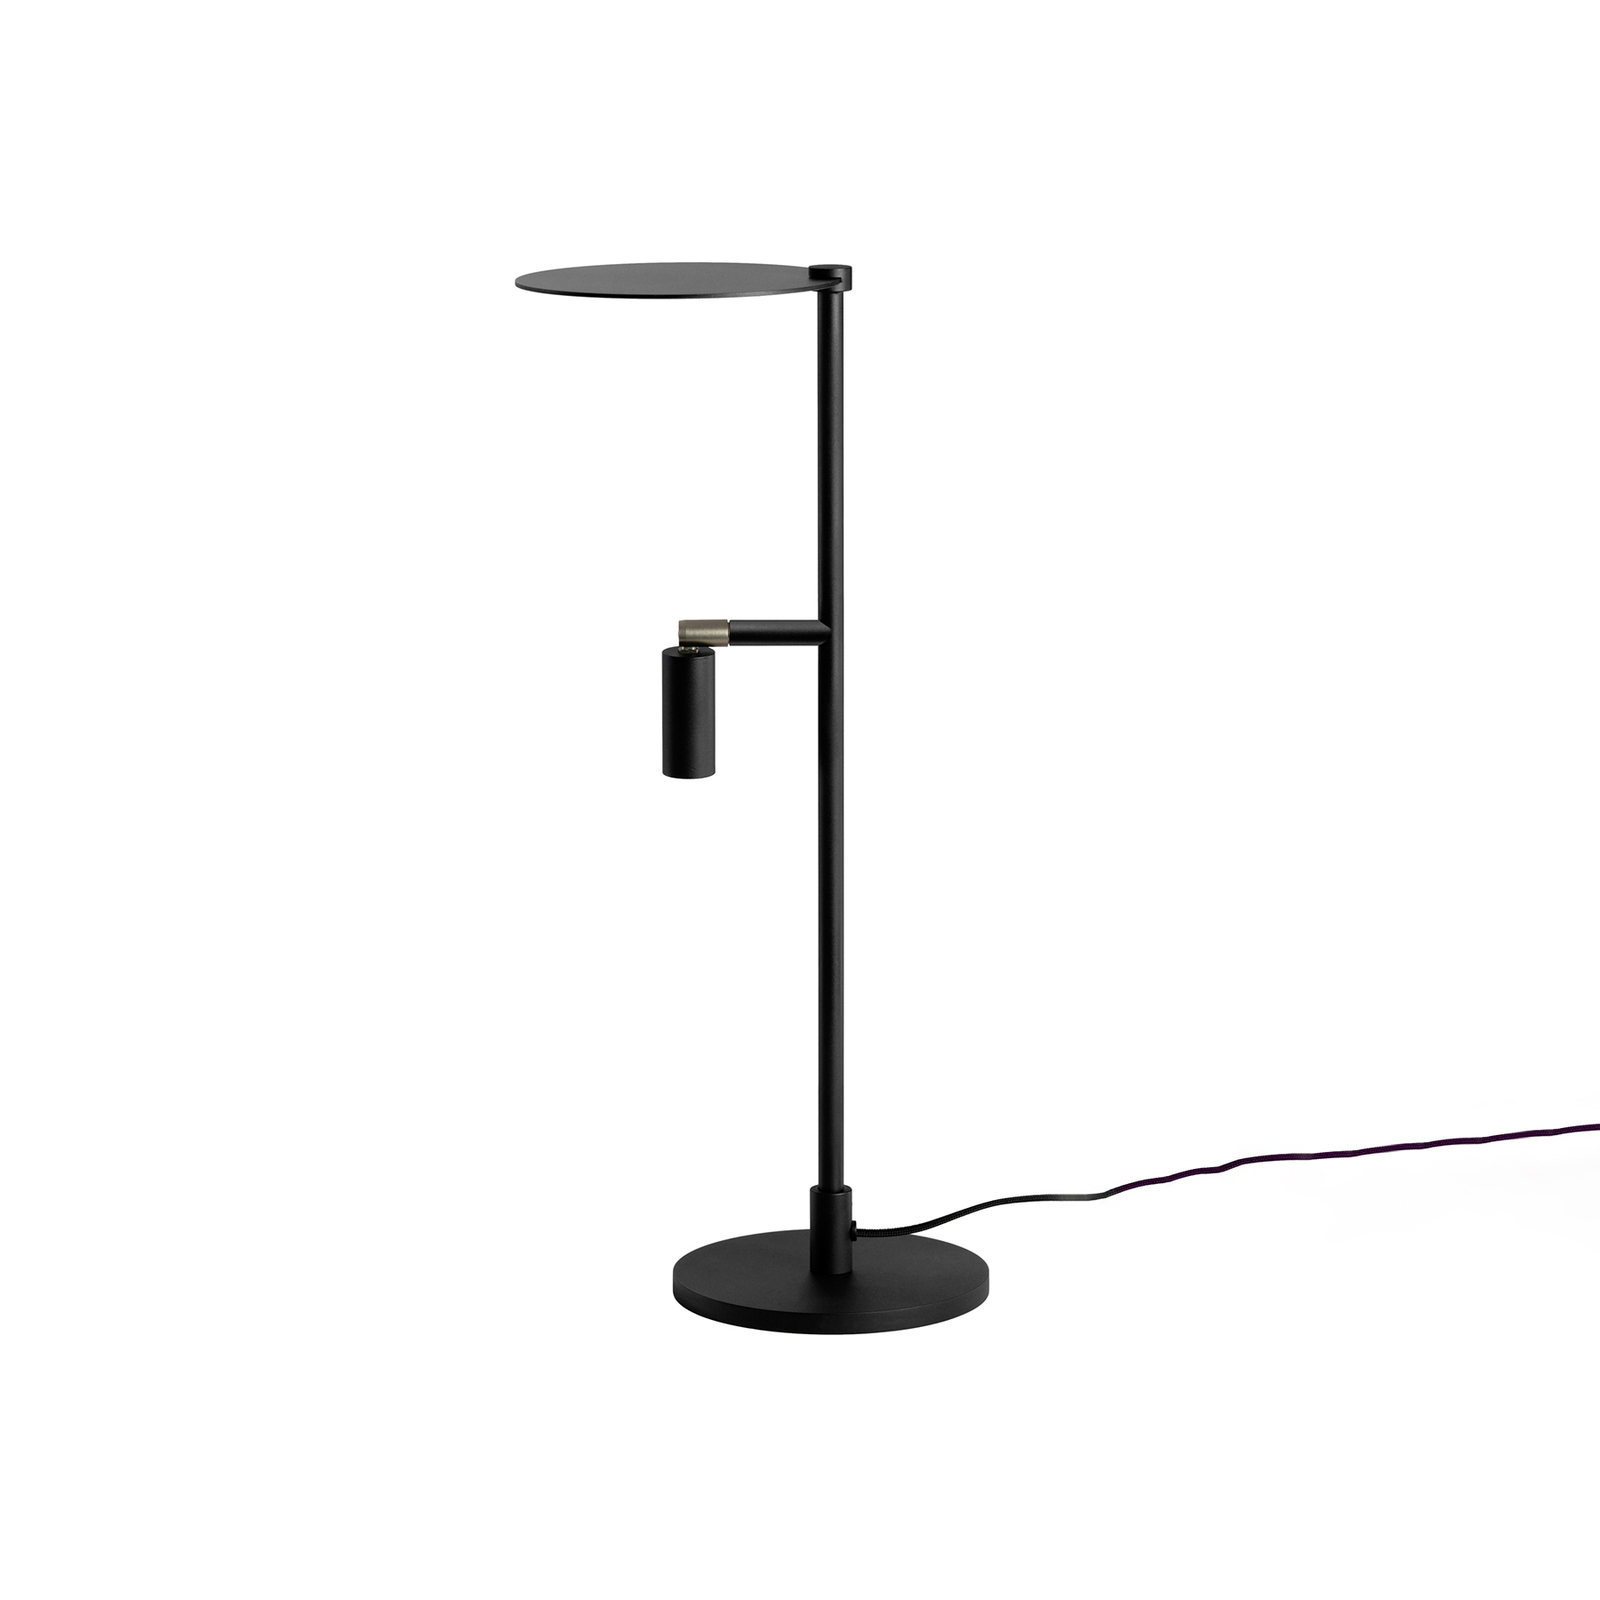 LED-pöytälamppu Kelly säädettävä, musta/nikkeli